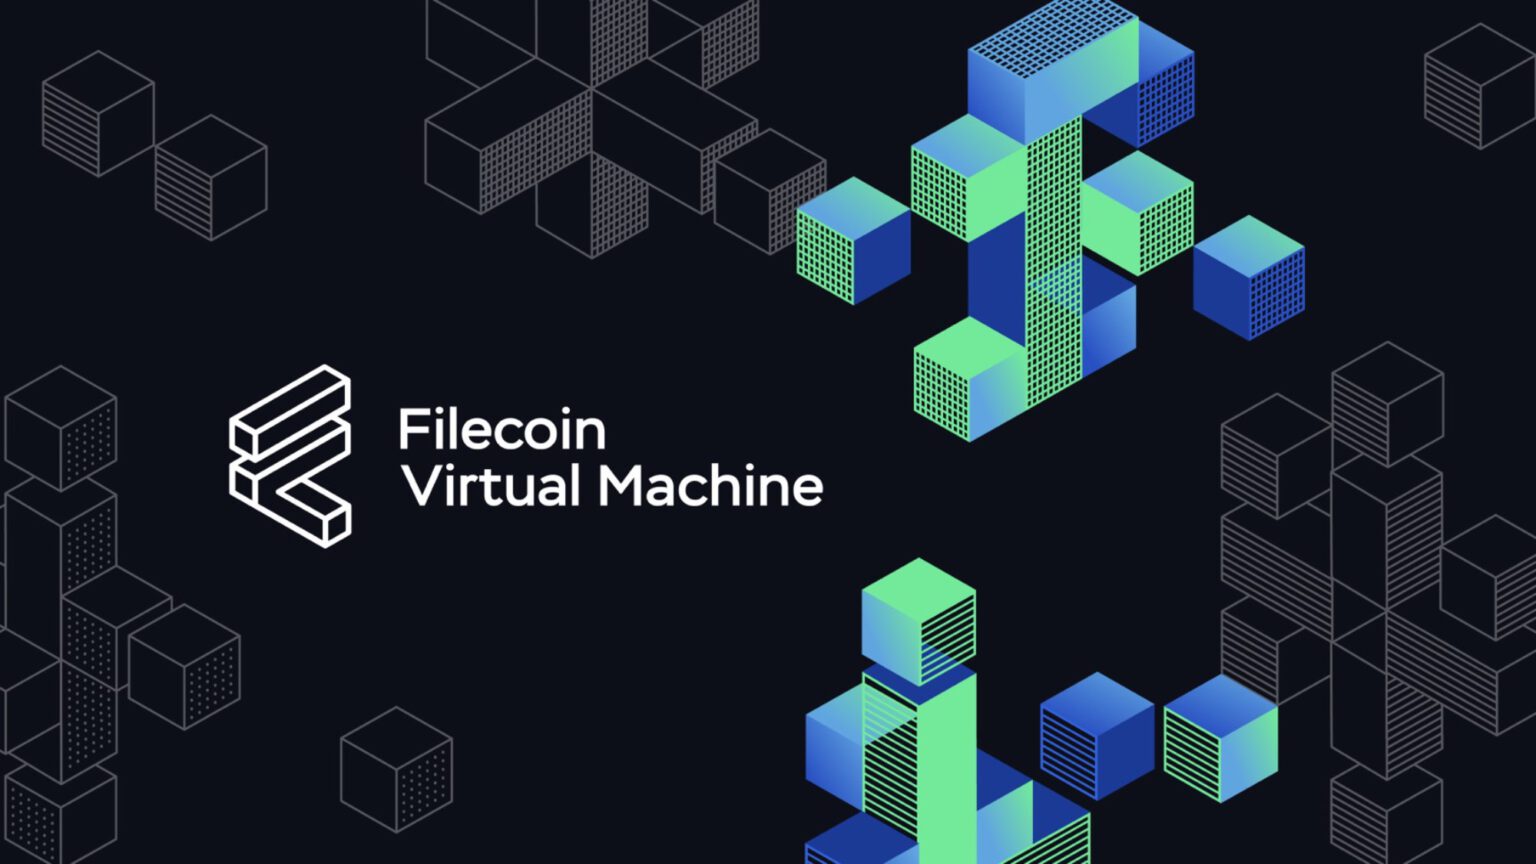 Filecoin-Virtual-Machine-1536x864.jpg